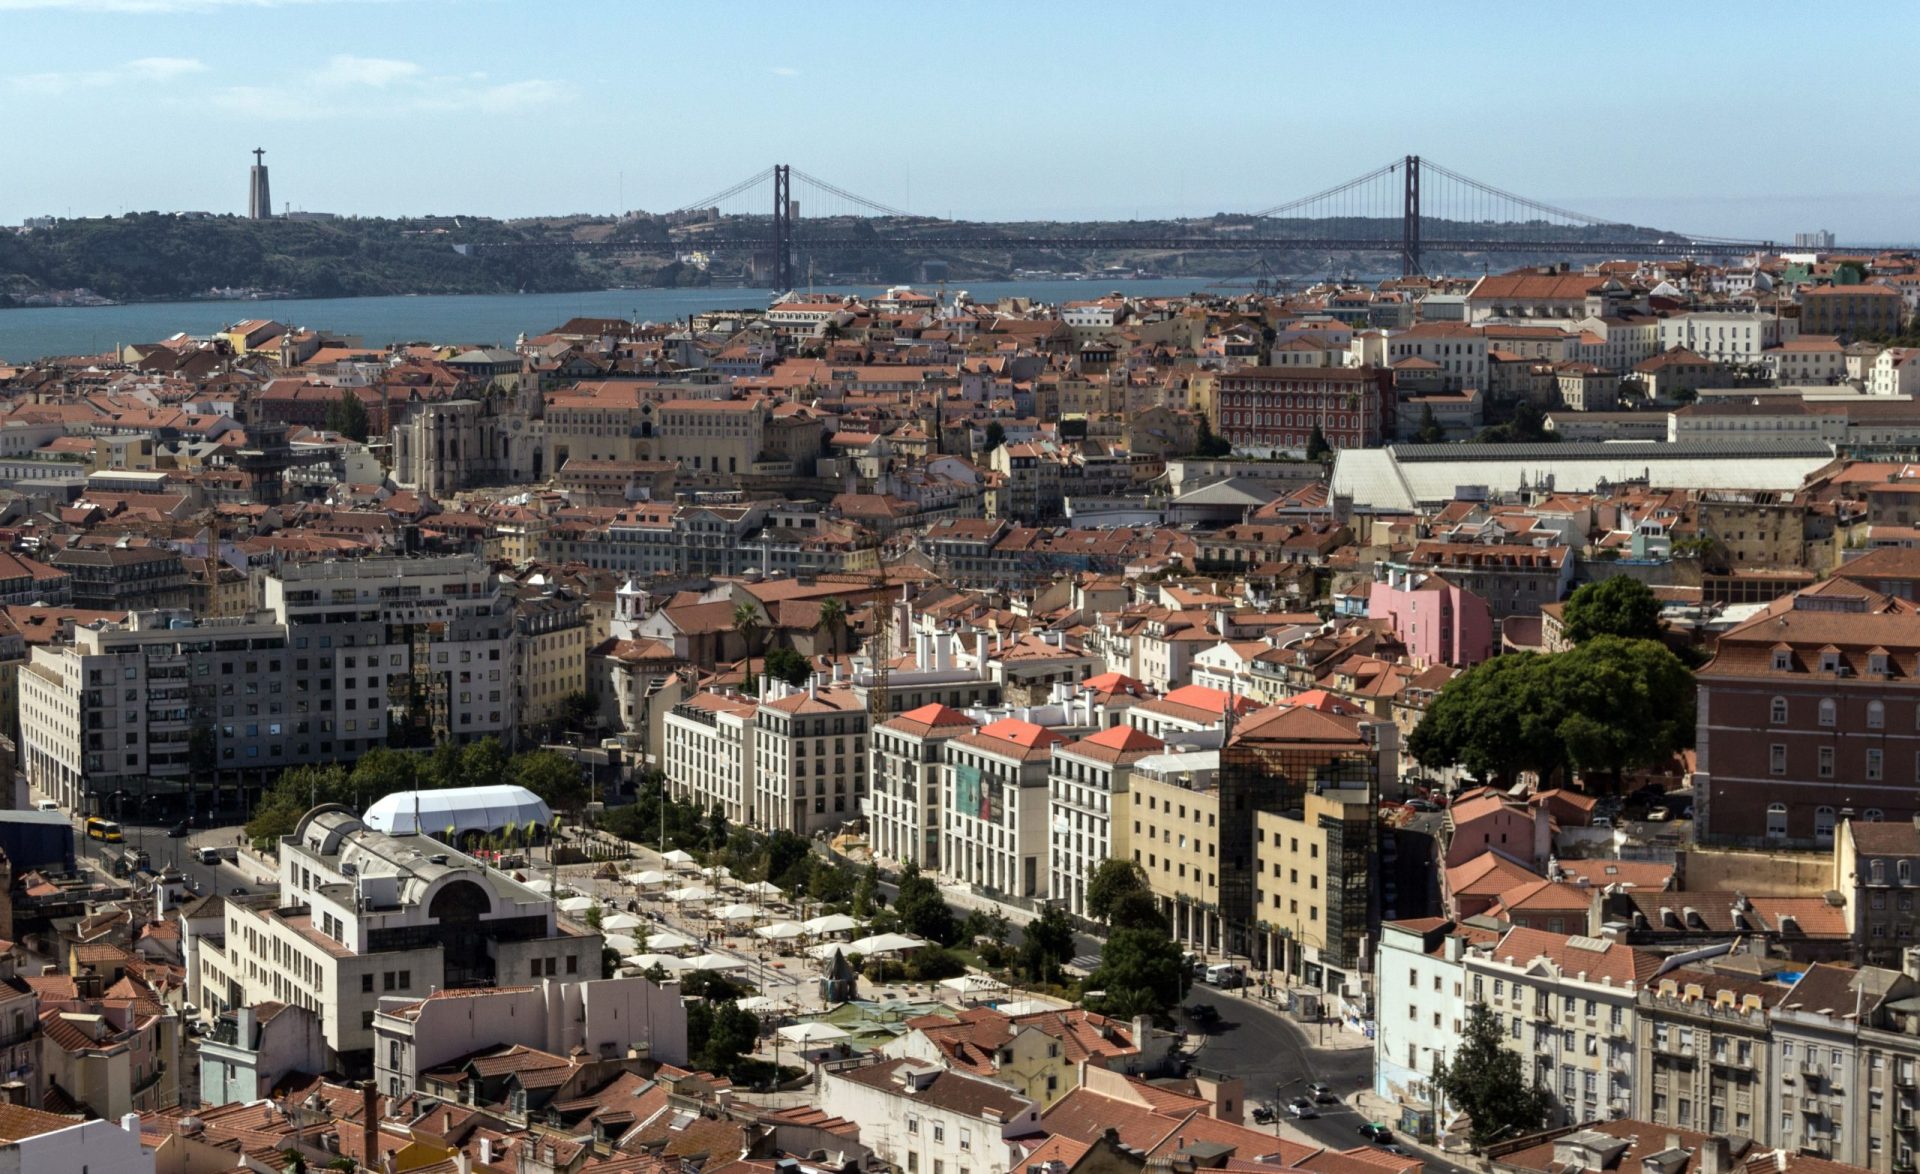 Candidaturas ao subsídio ao arrendamento em Lisboa terminam no final do mês